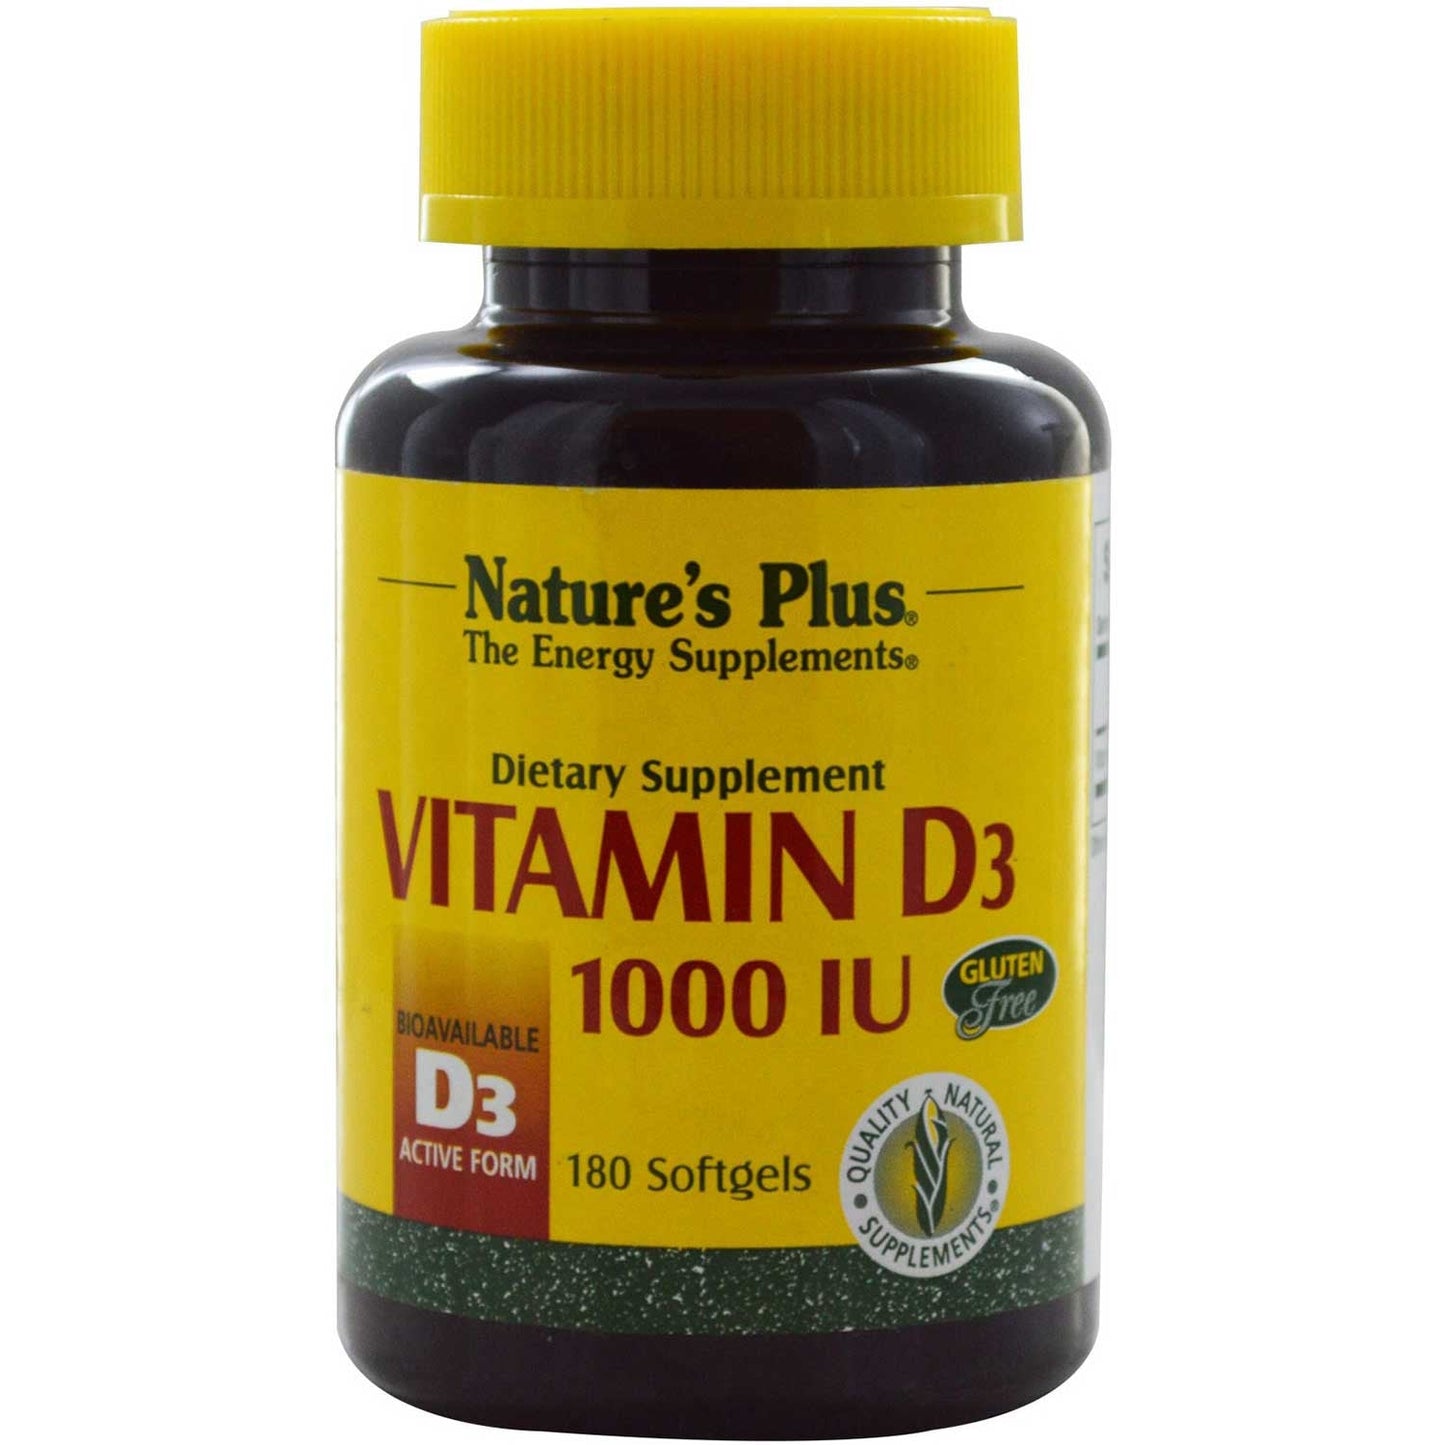 Natures Plus Vitamin D 1000 IU (D3, Cholecalciferol), 180 sgls.-NaturesWisdom